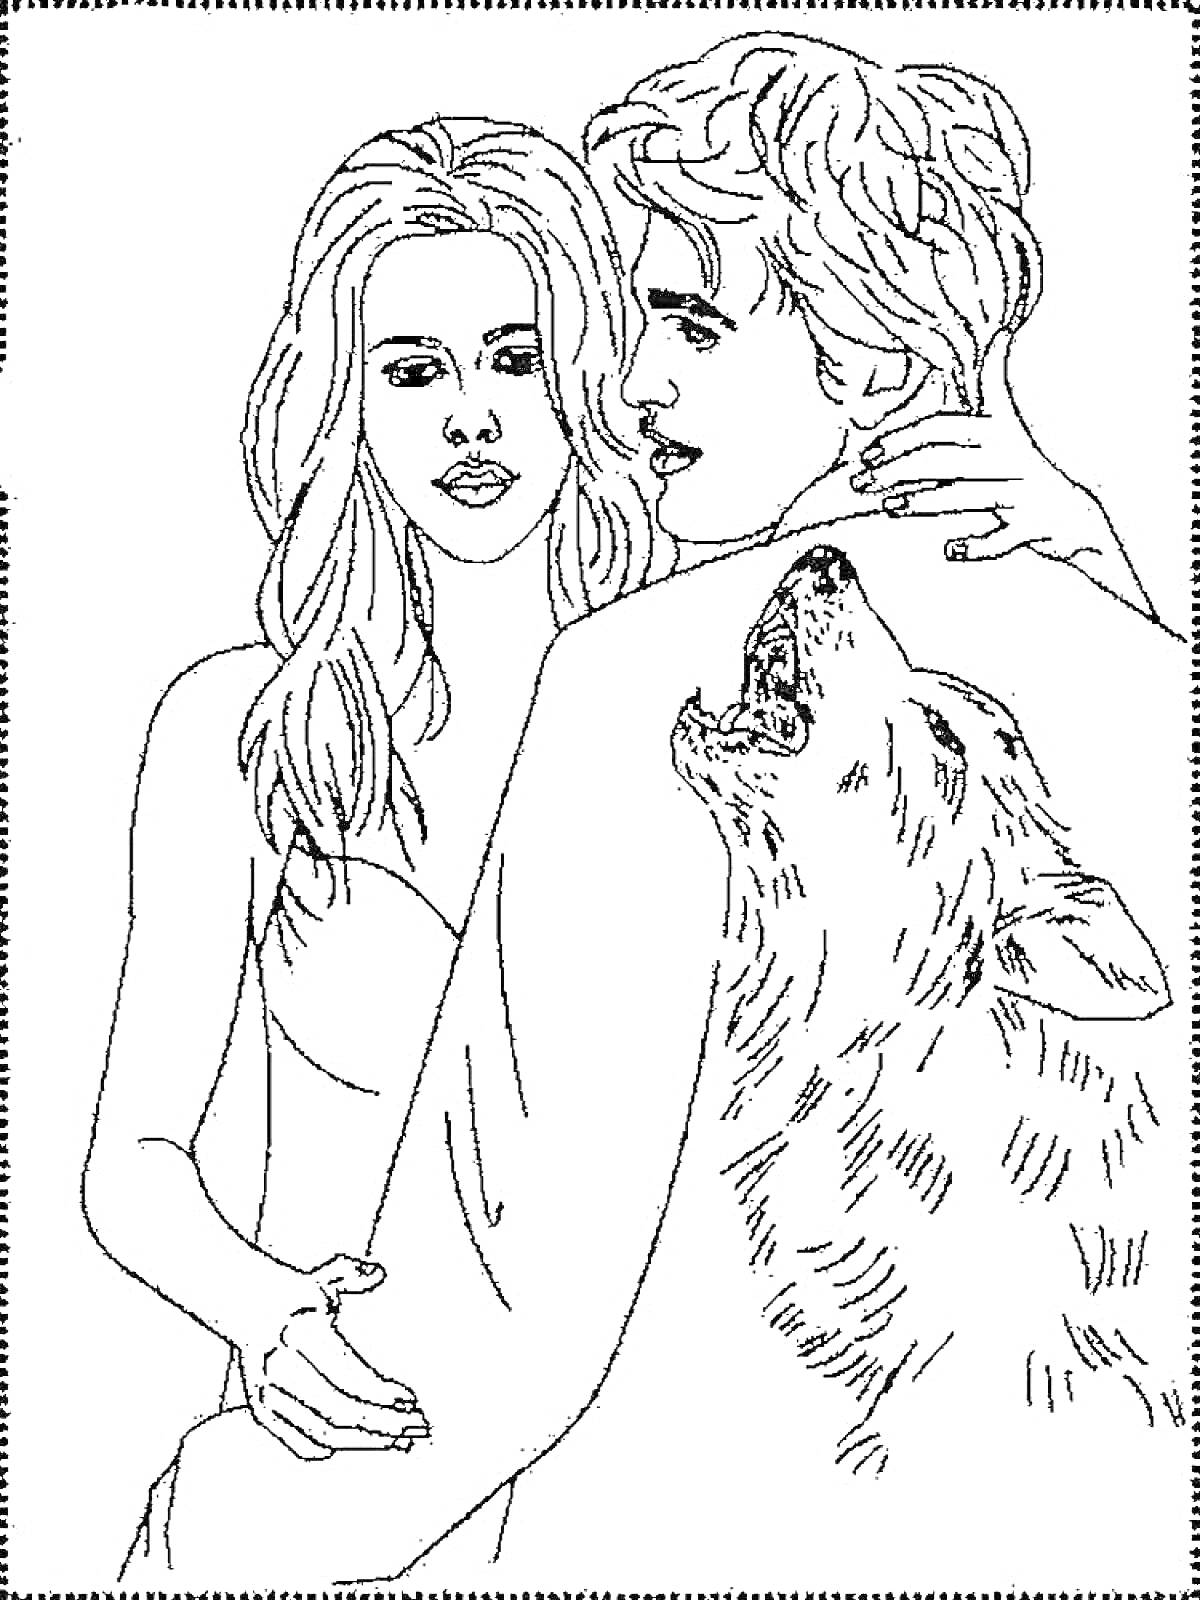 РаскраскаПара обнимающихся людей с изображением волка на спине мужчины